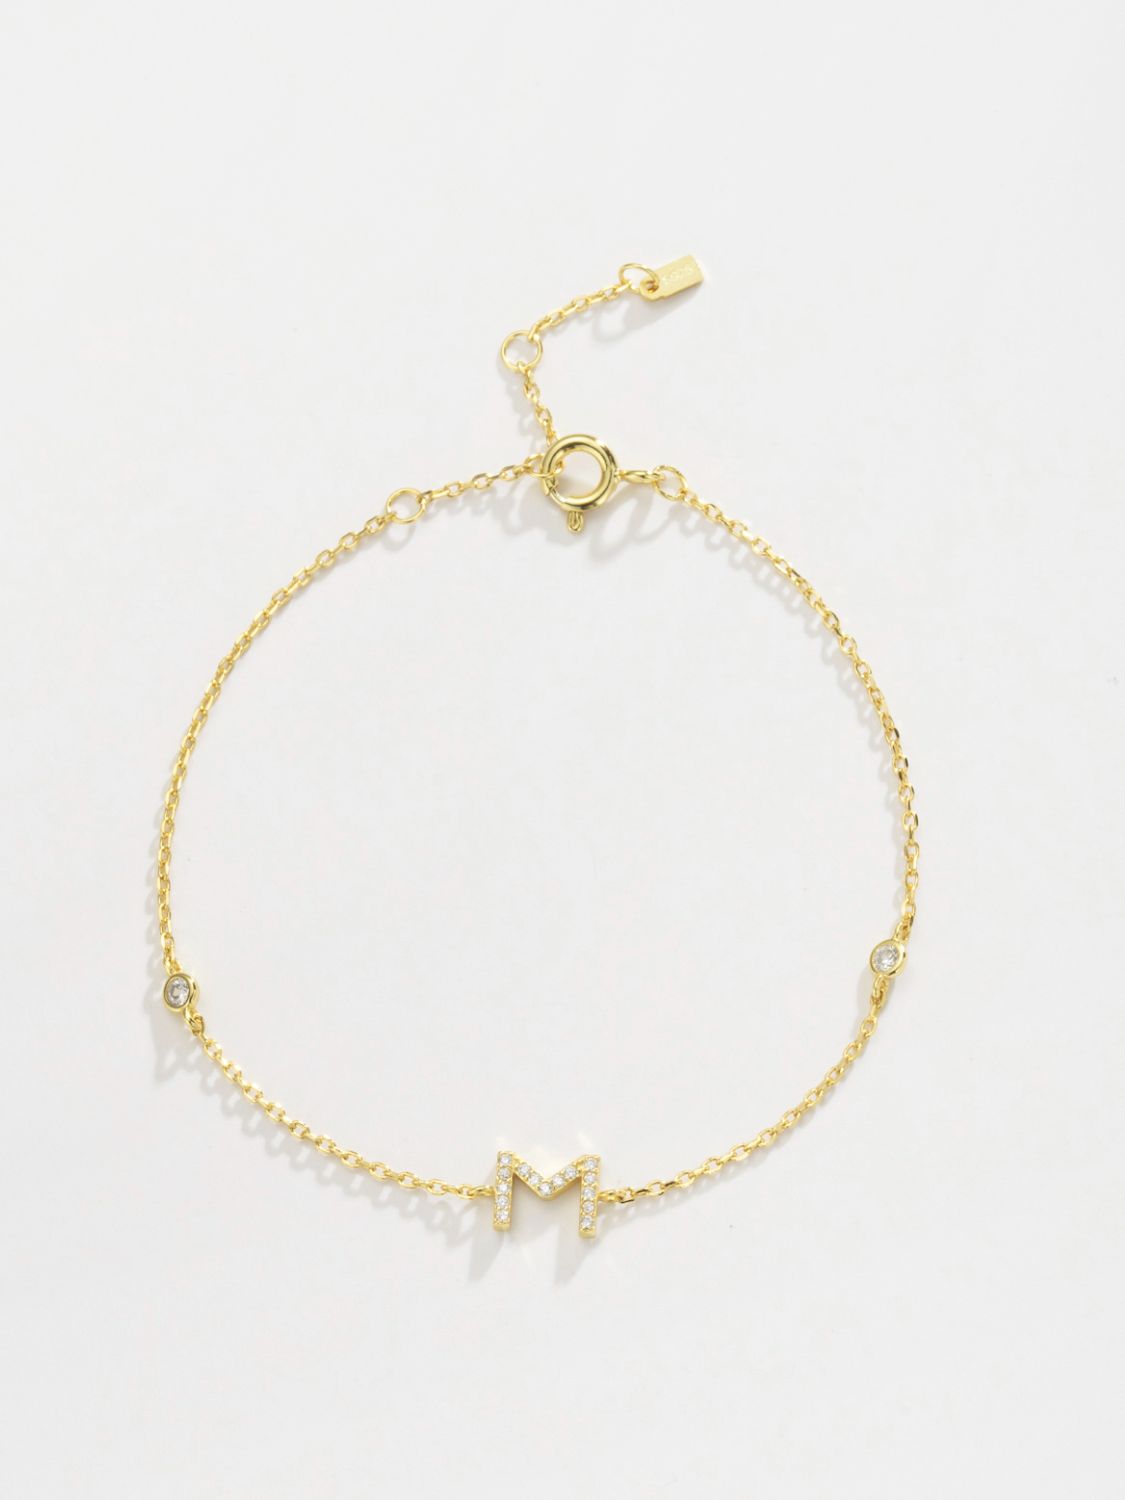 L To P Zircon 925 Sterling Silver Bracelet - Women’s Jewelry - Bracelets - 8 - 2024